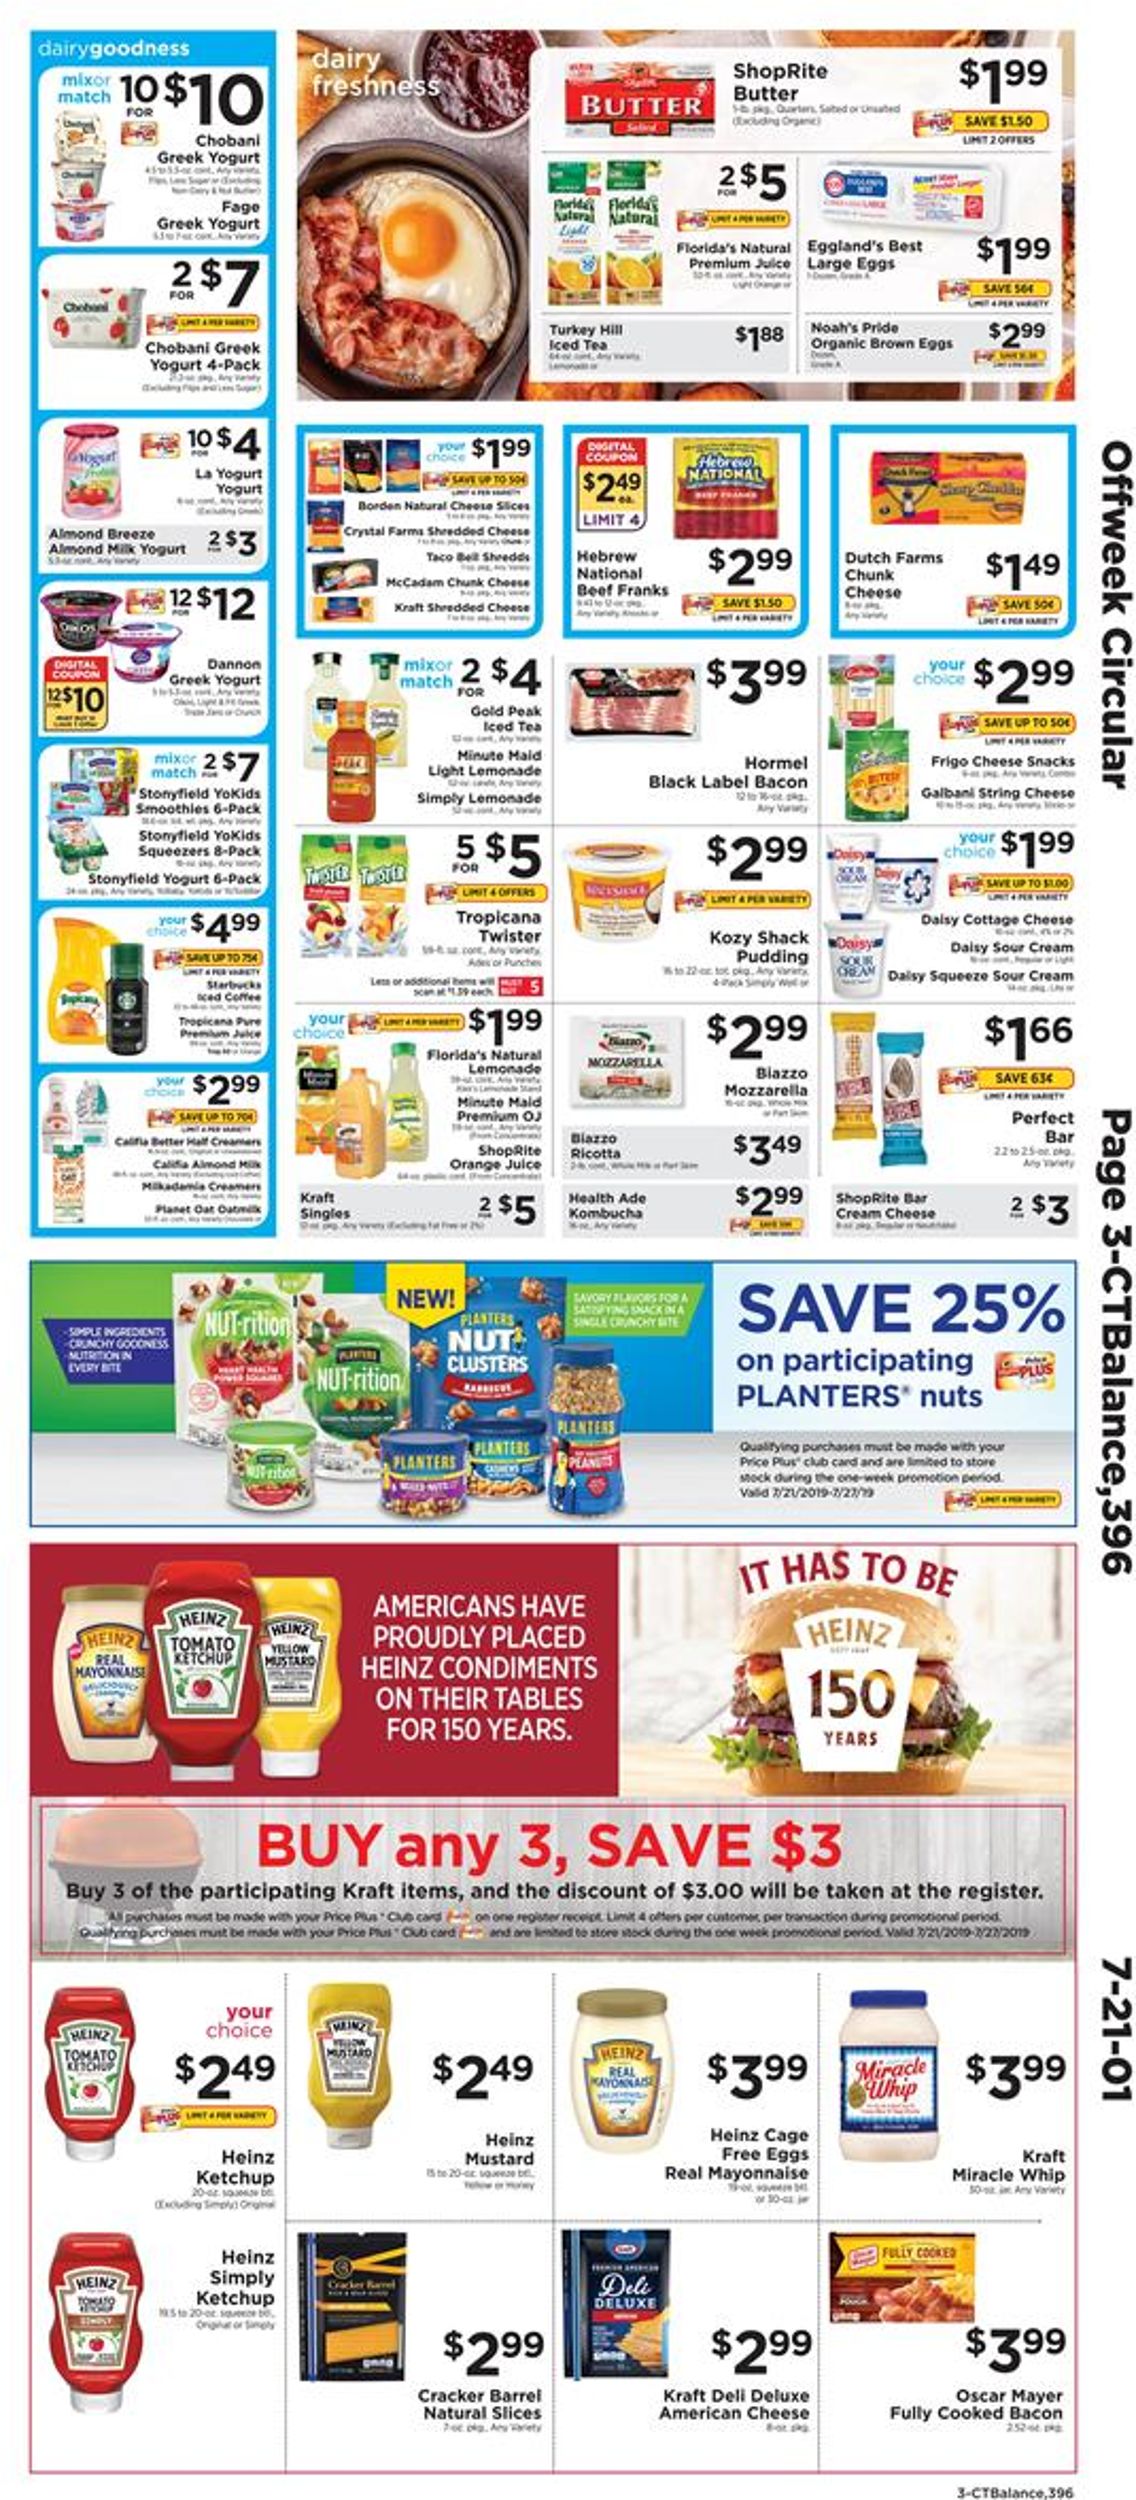 ShopRite Weekly Ad Circular - valid 07/21-07/27/2019 (Page 3)